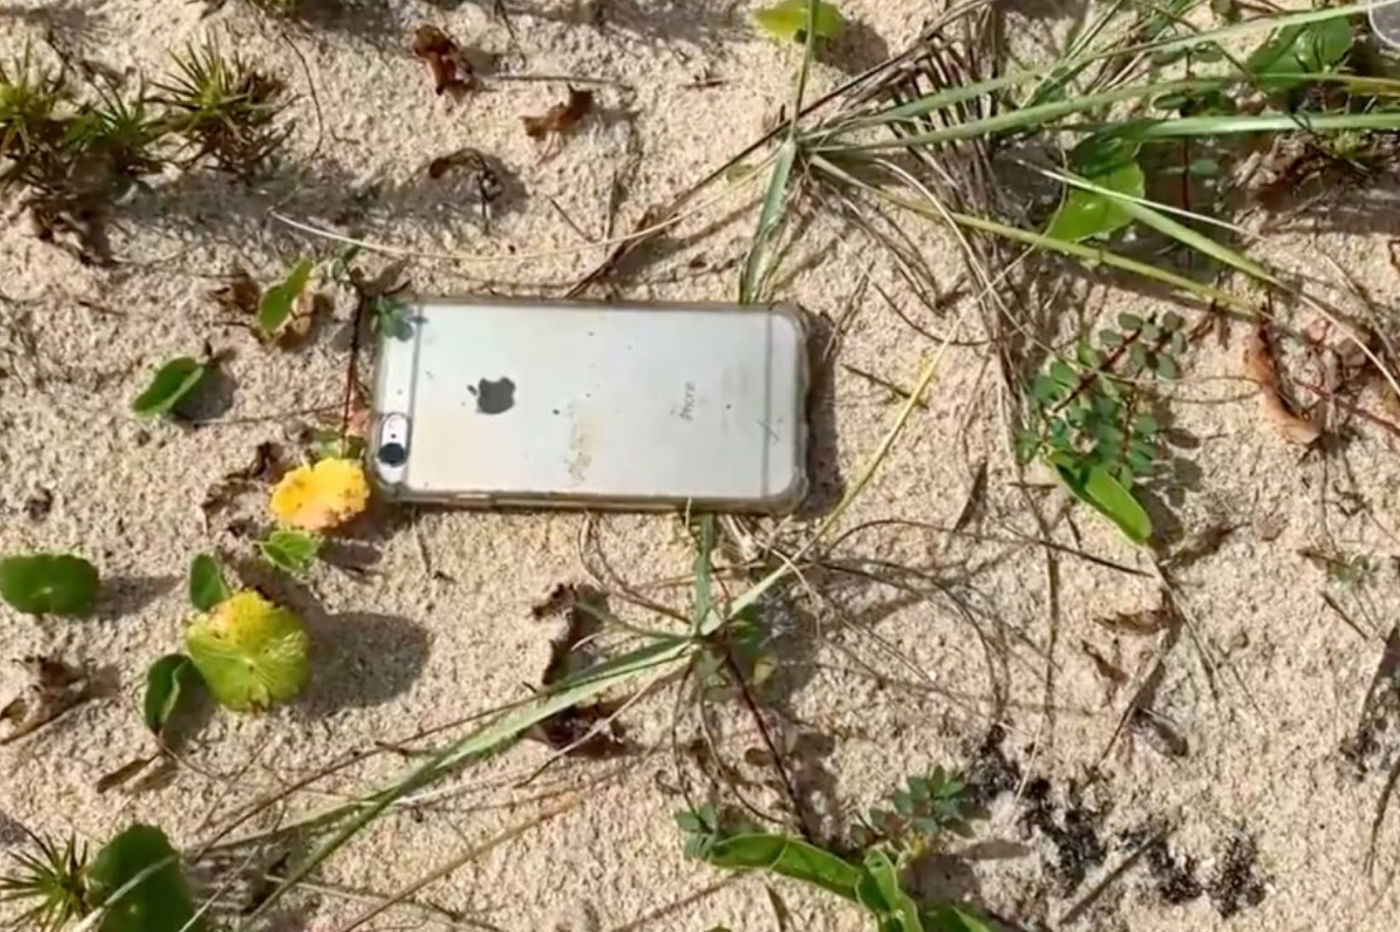 iPhone 6s dans le sable